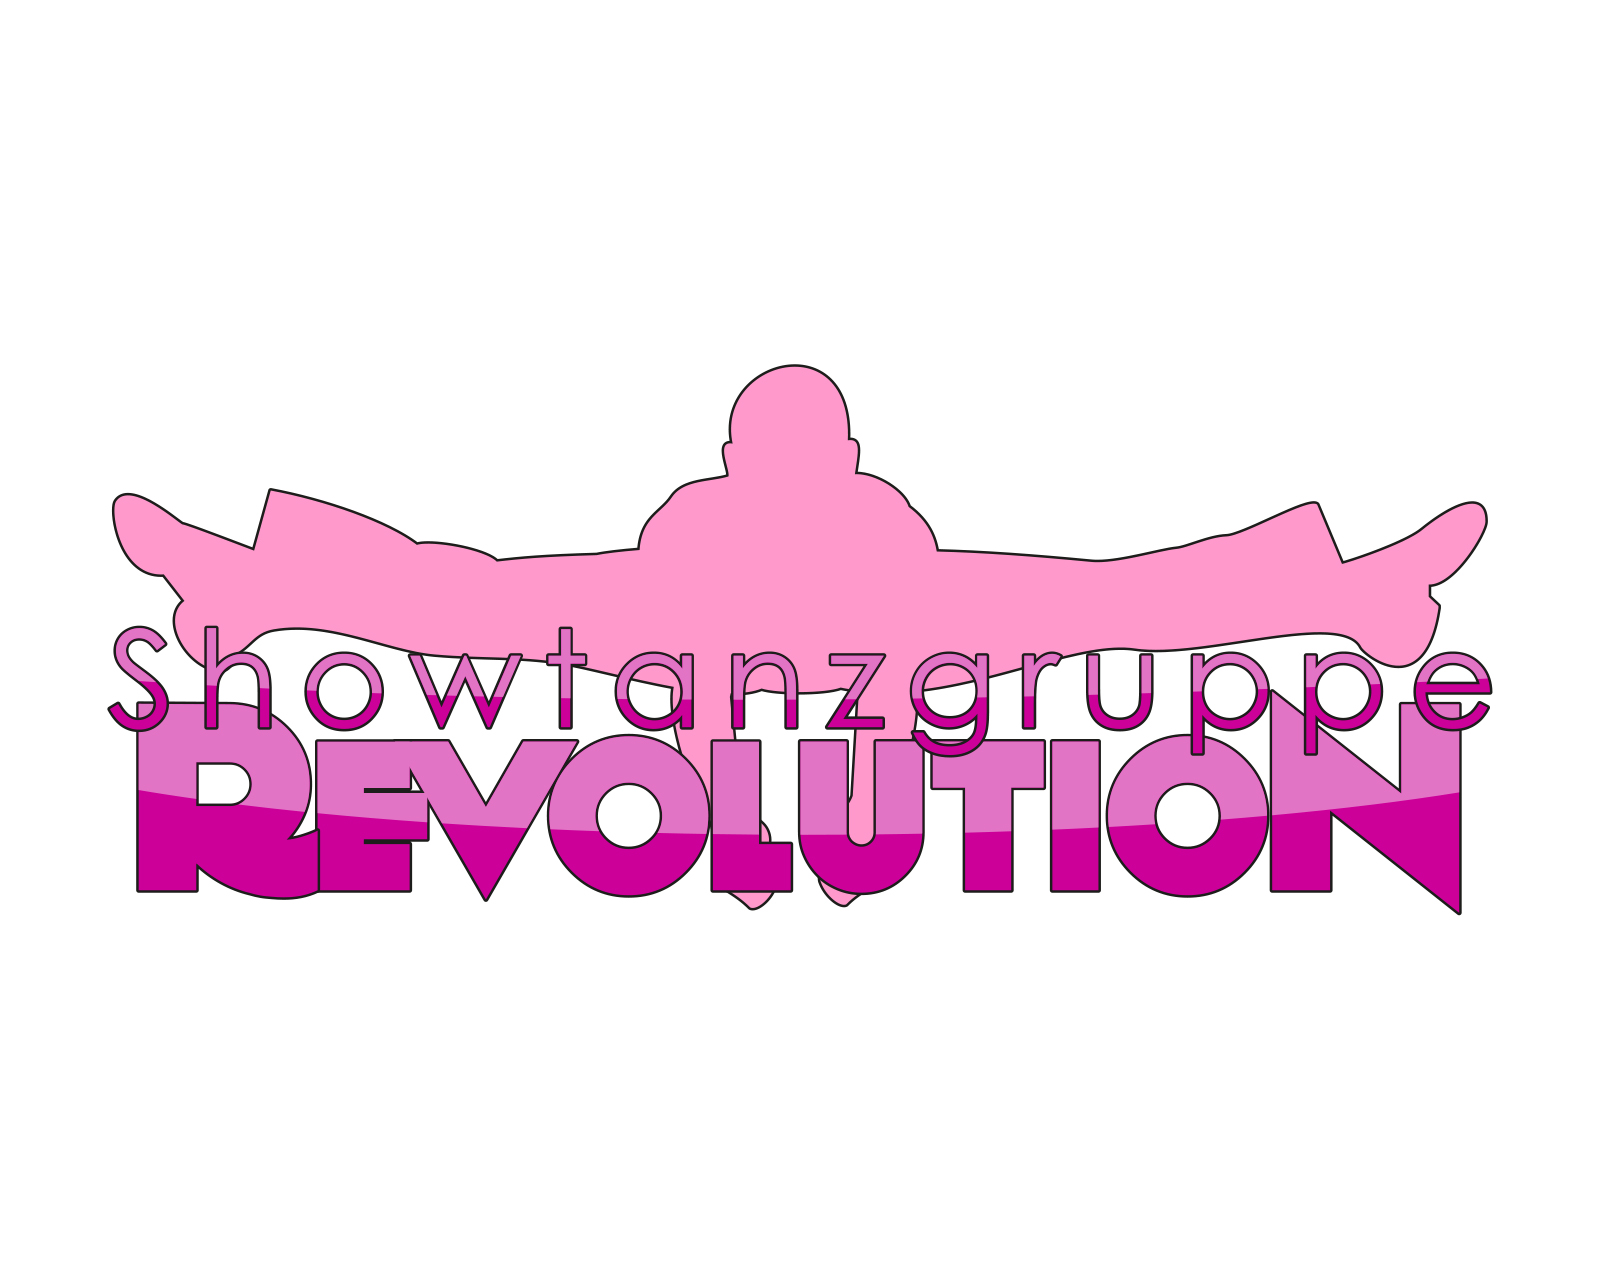 (c) Revolution-showtanz.de